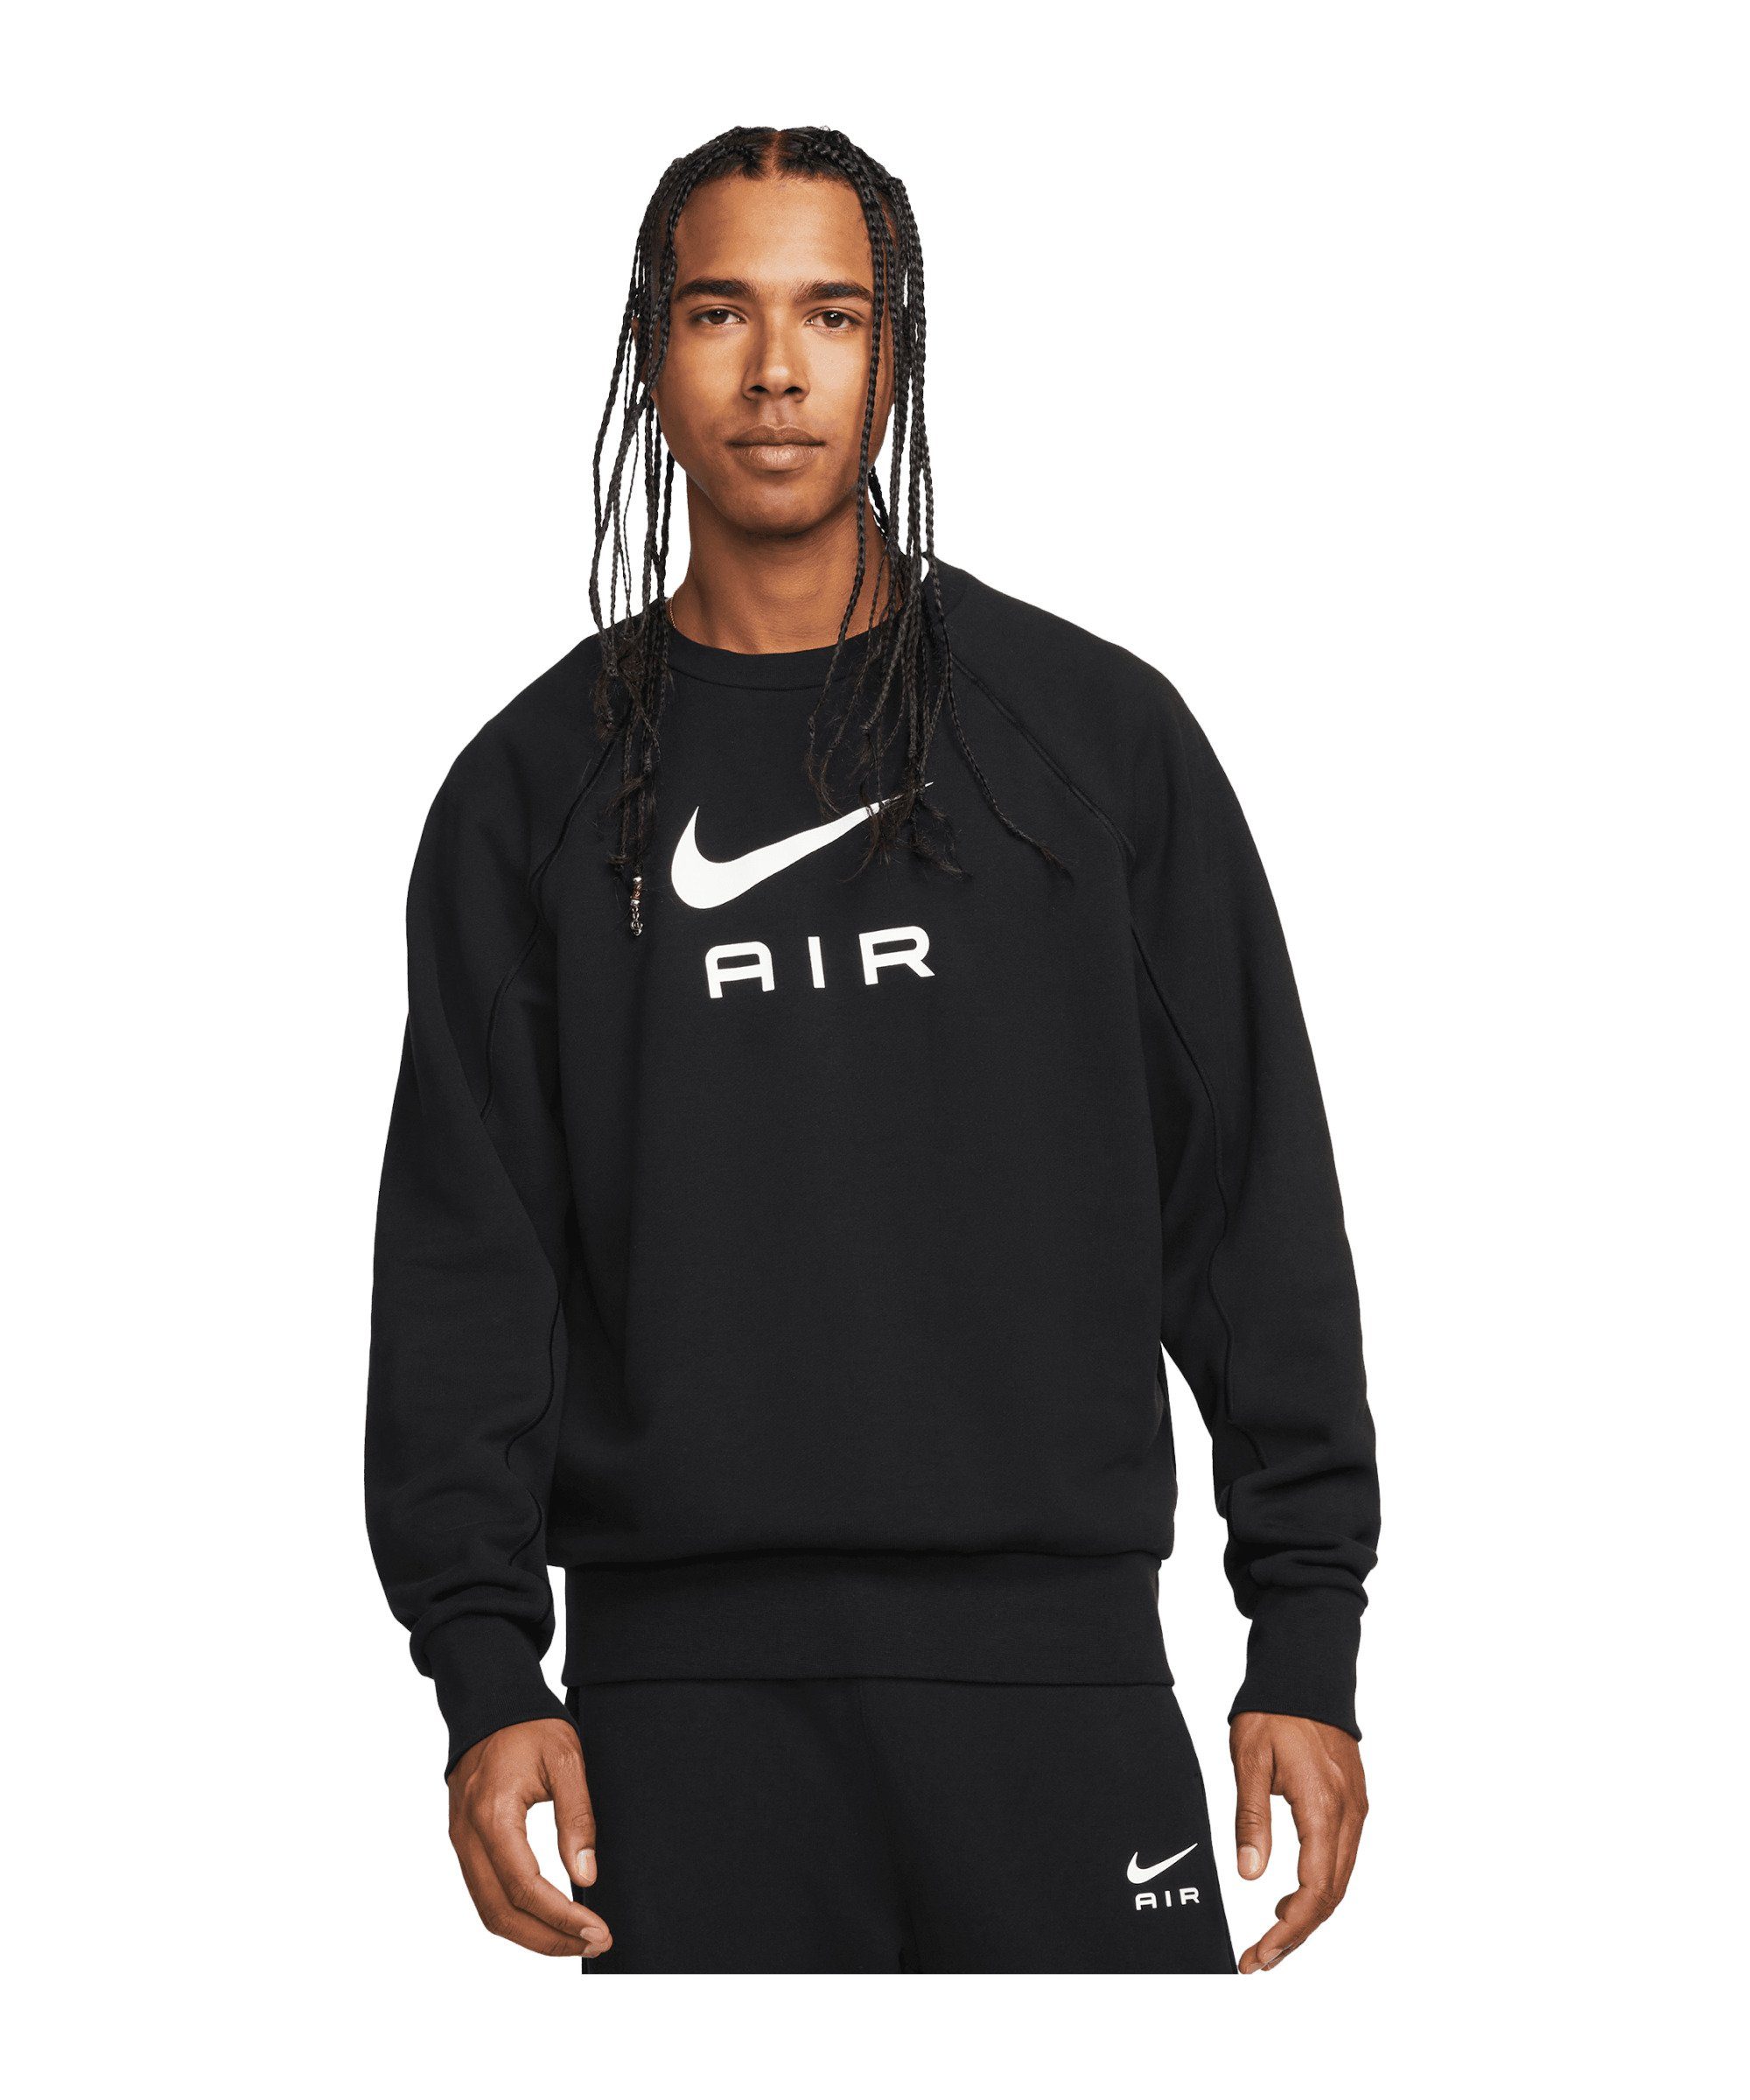 Nike Sportswear Sweatshirt Air FT Crew Sweatshirt schwarzweiss